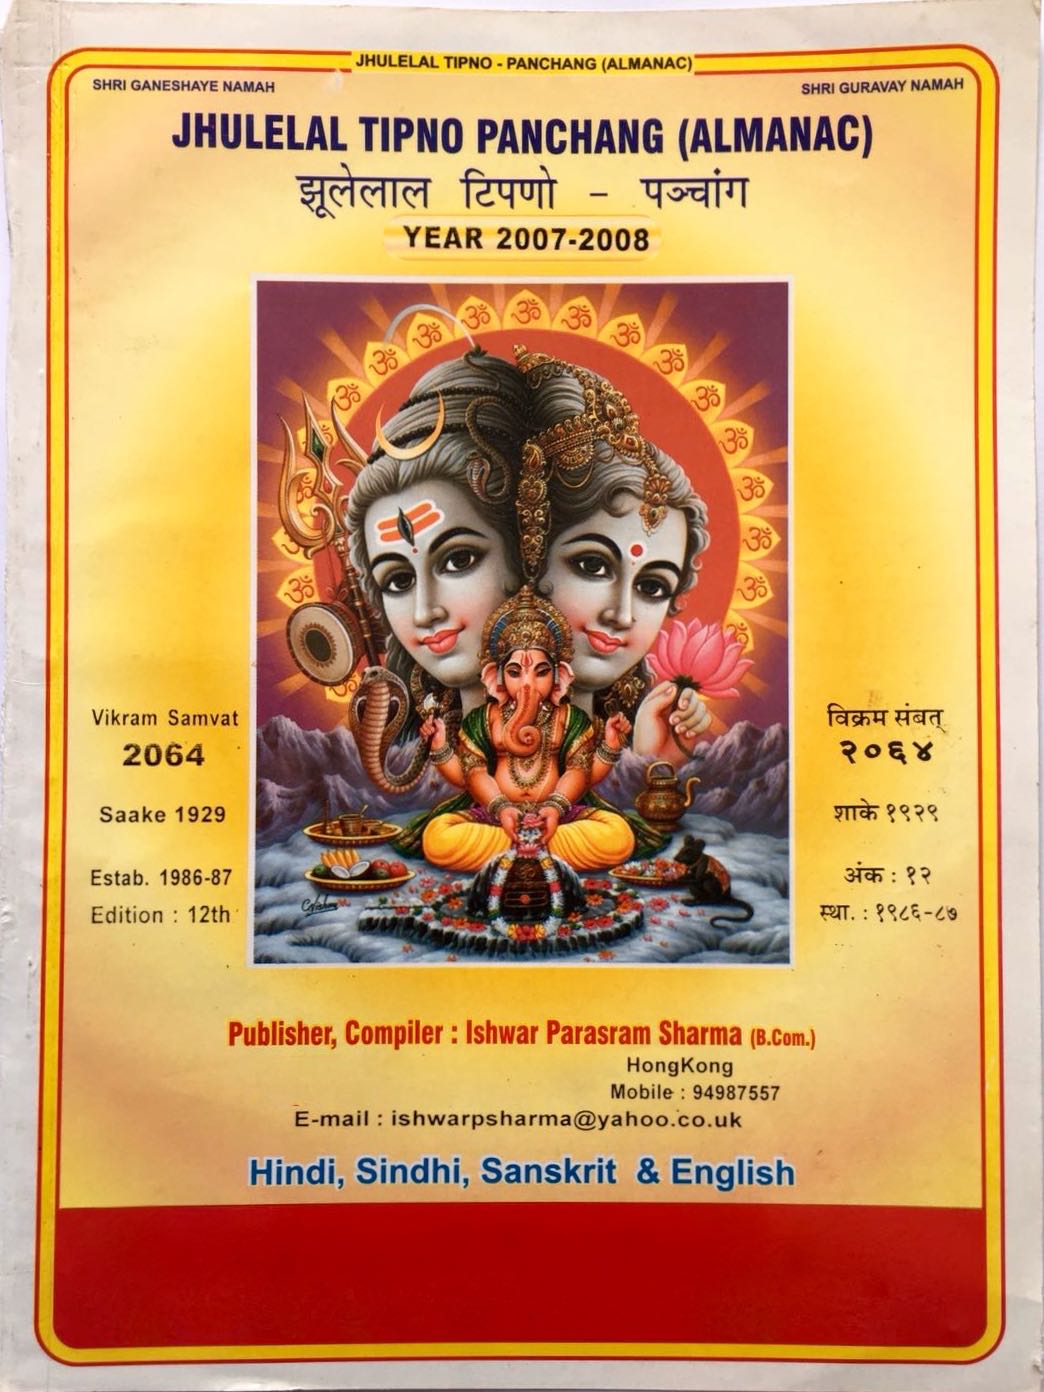 Jhulelal Tipno Panchang (Almanac) Year 2007-2008 - Publisher, Compiler by Ishwar Parsram Sharma in Hindi, Sindhi, Sanskrit and English -Top cover page English and Hindi side